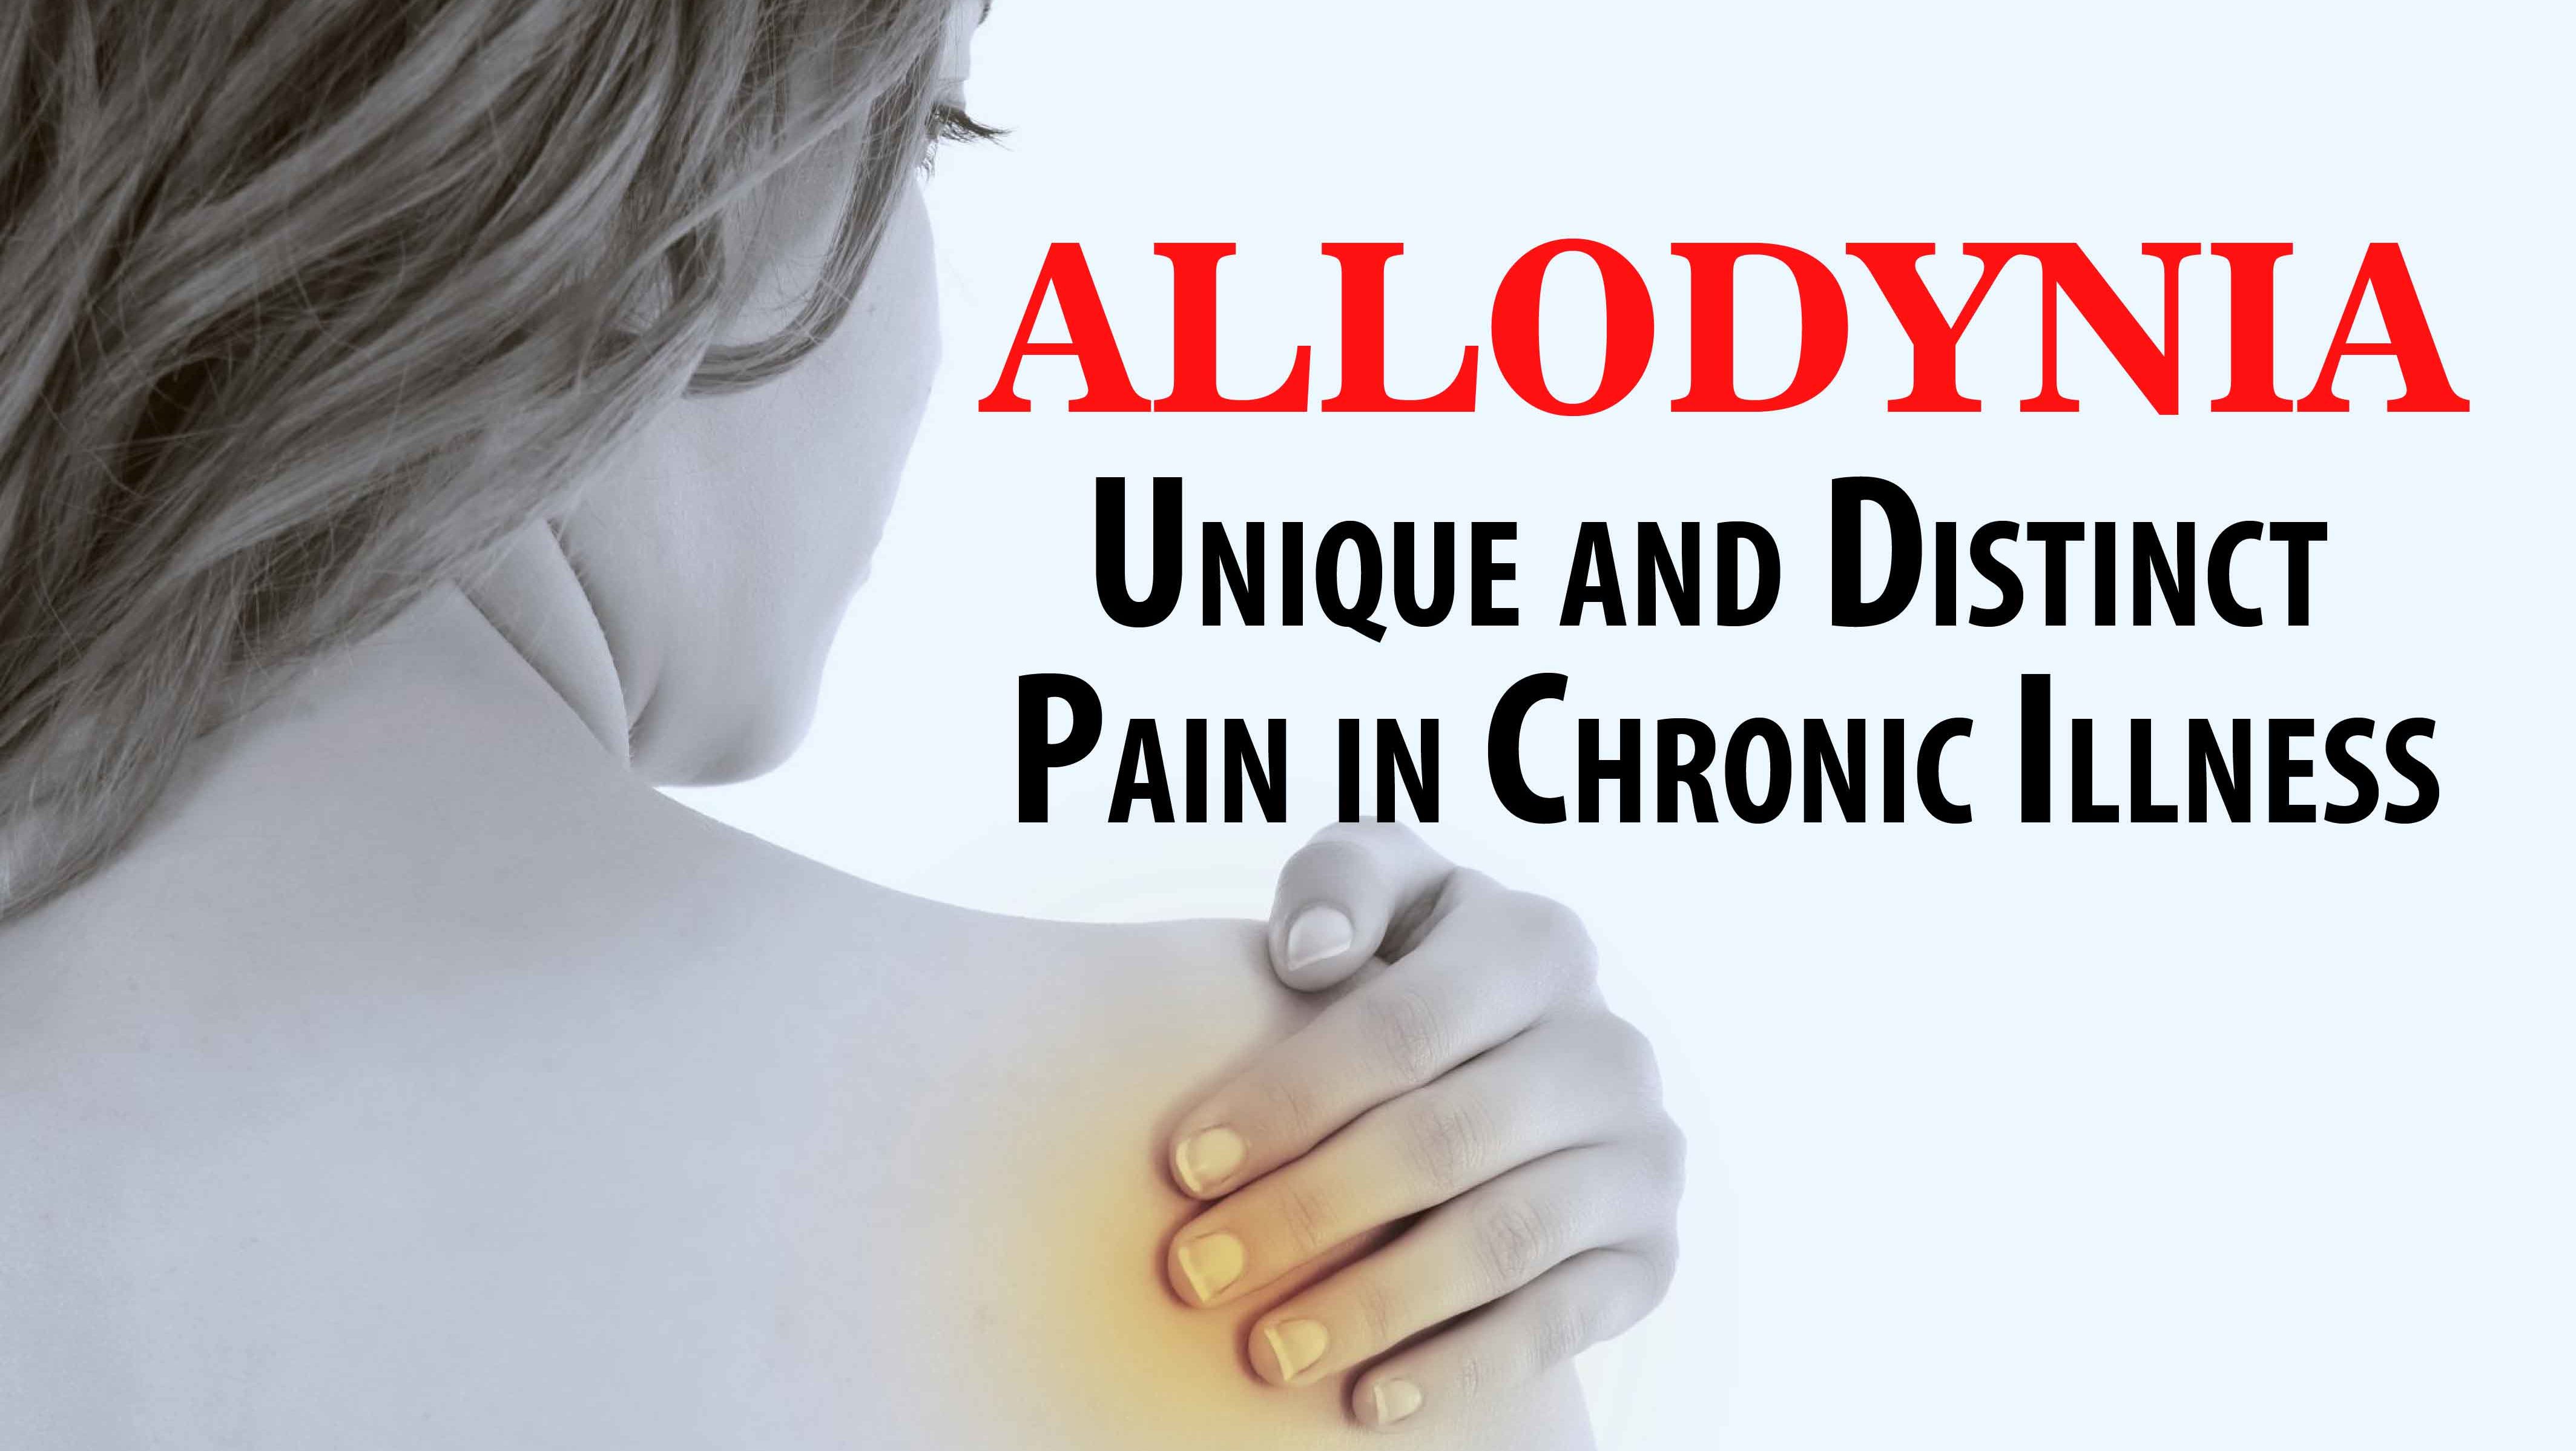 Allodynia: Unique and Distinct Pain in Chronic Illness